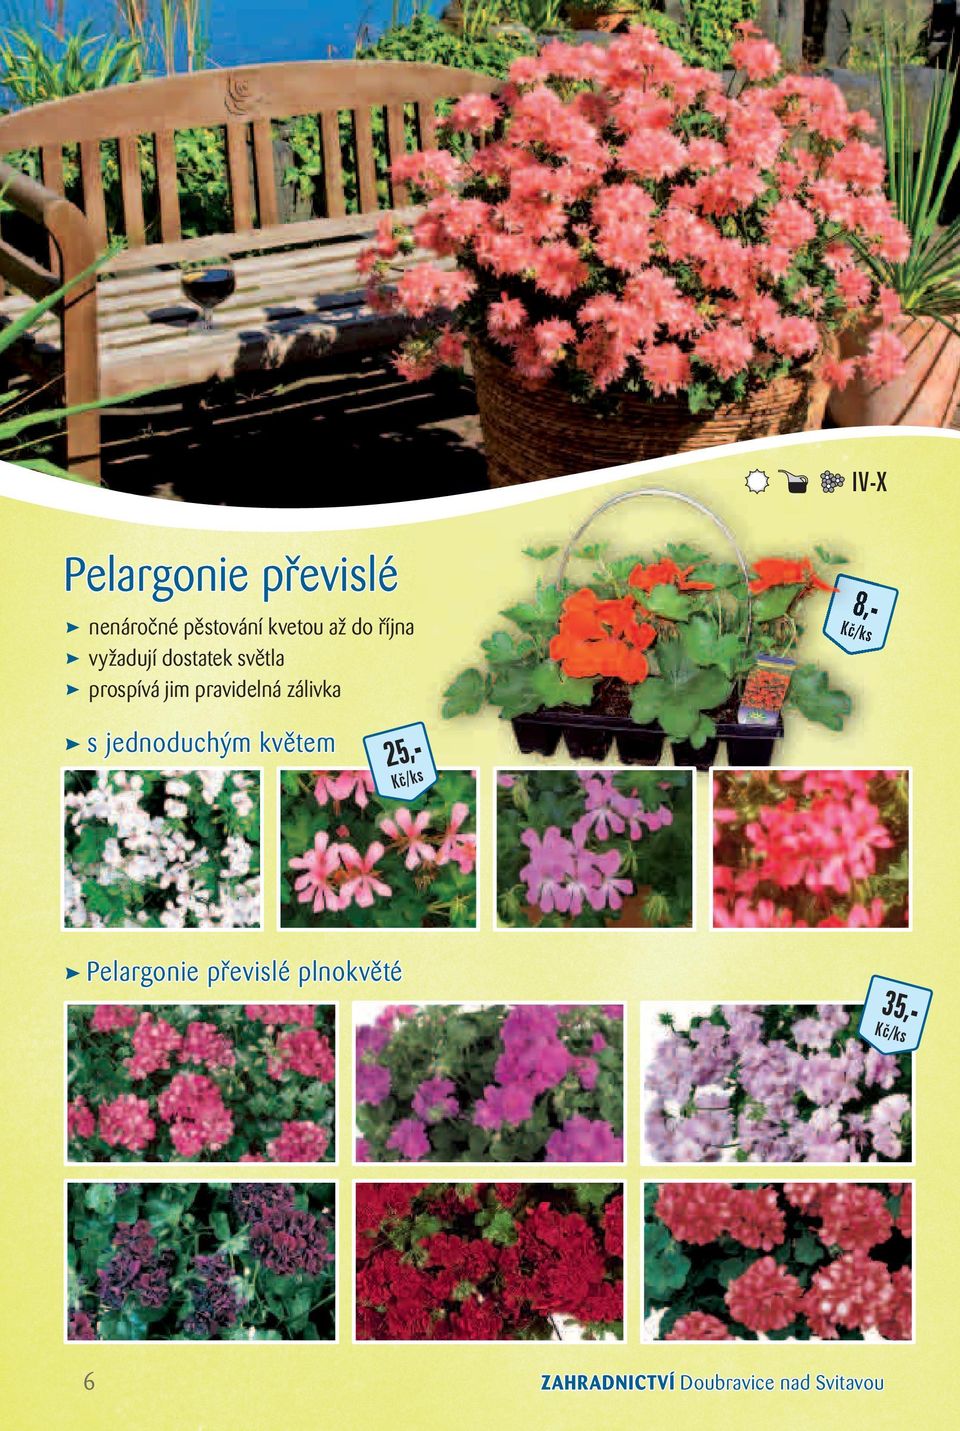 pravidelná zálivka s jednoduchým květem 25,- Pelargonie